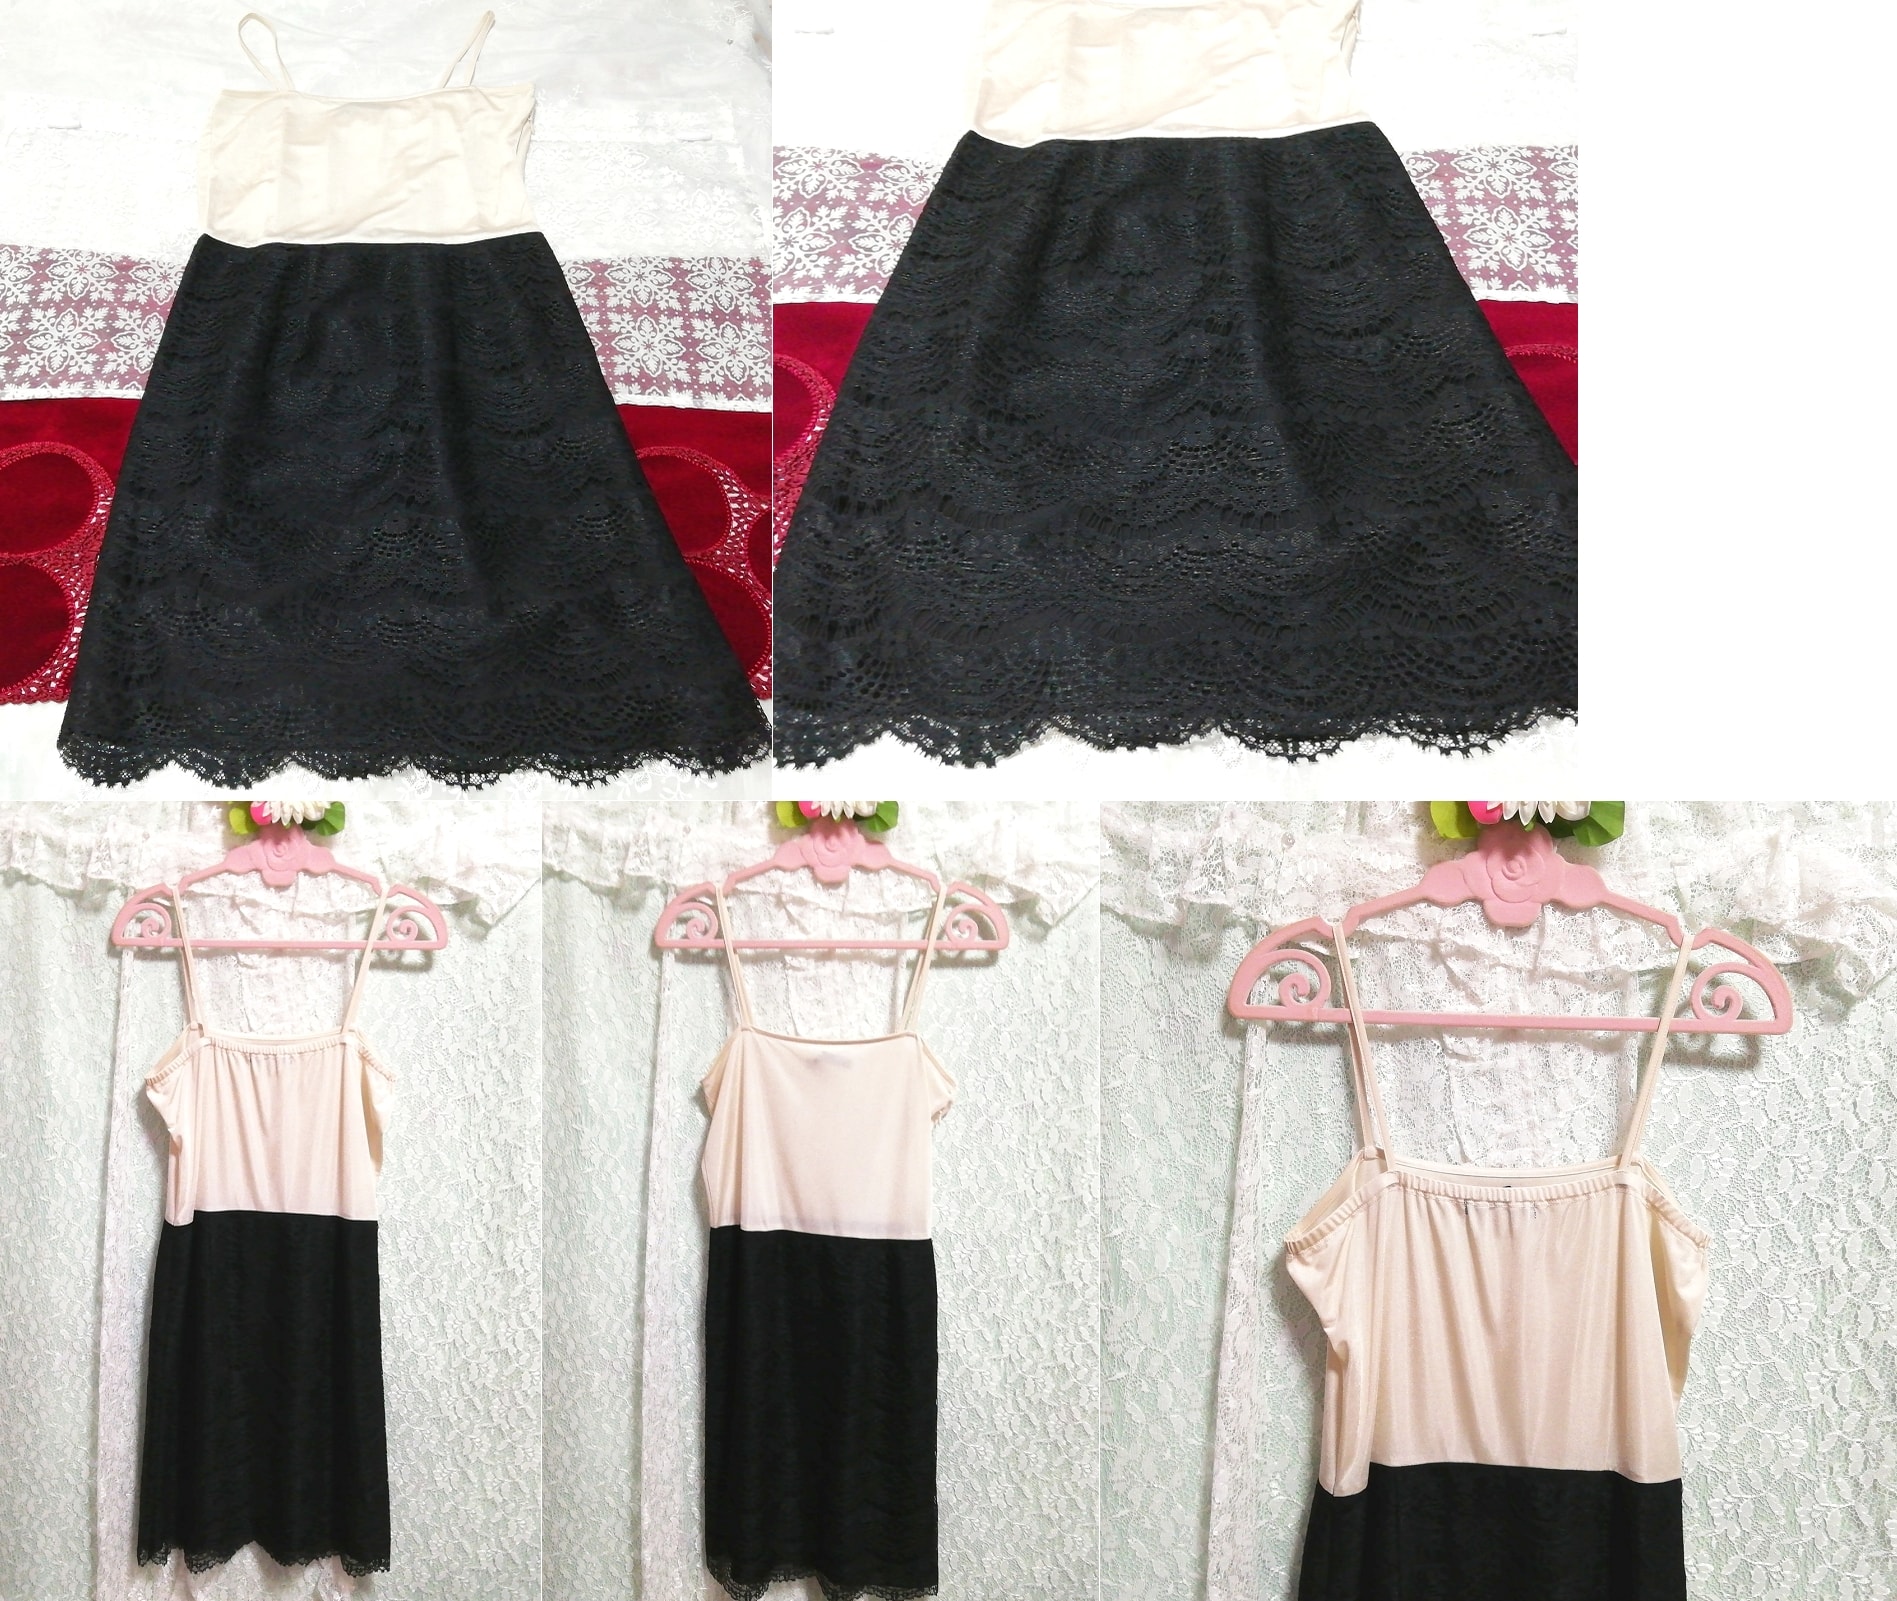 フローラルホワイトキャミソール黒レーススカート ネグリジェ ベビードールドレス Floral white camisole black lace skirt negligee dress, ファッション, レディースファッション, キャミソール